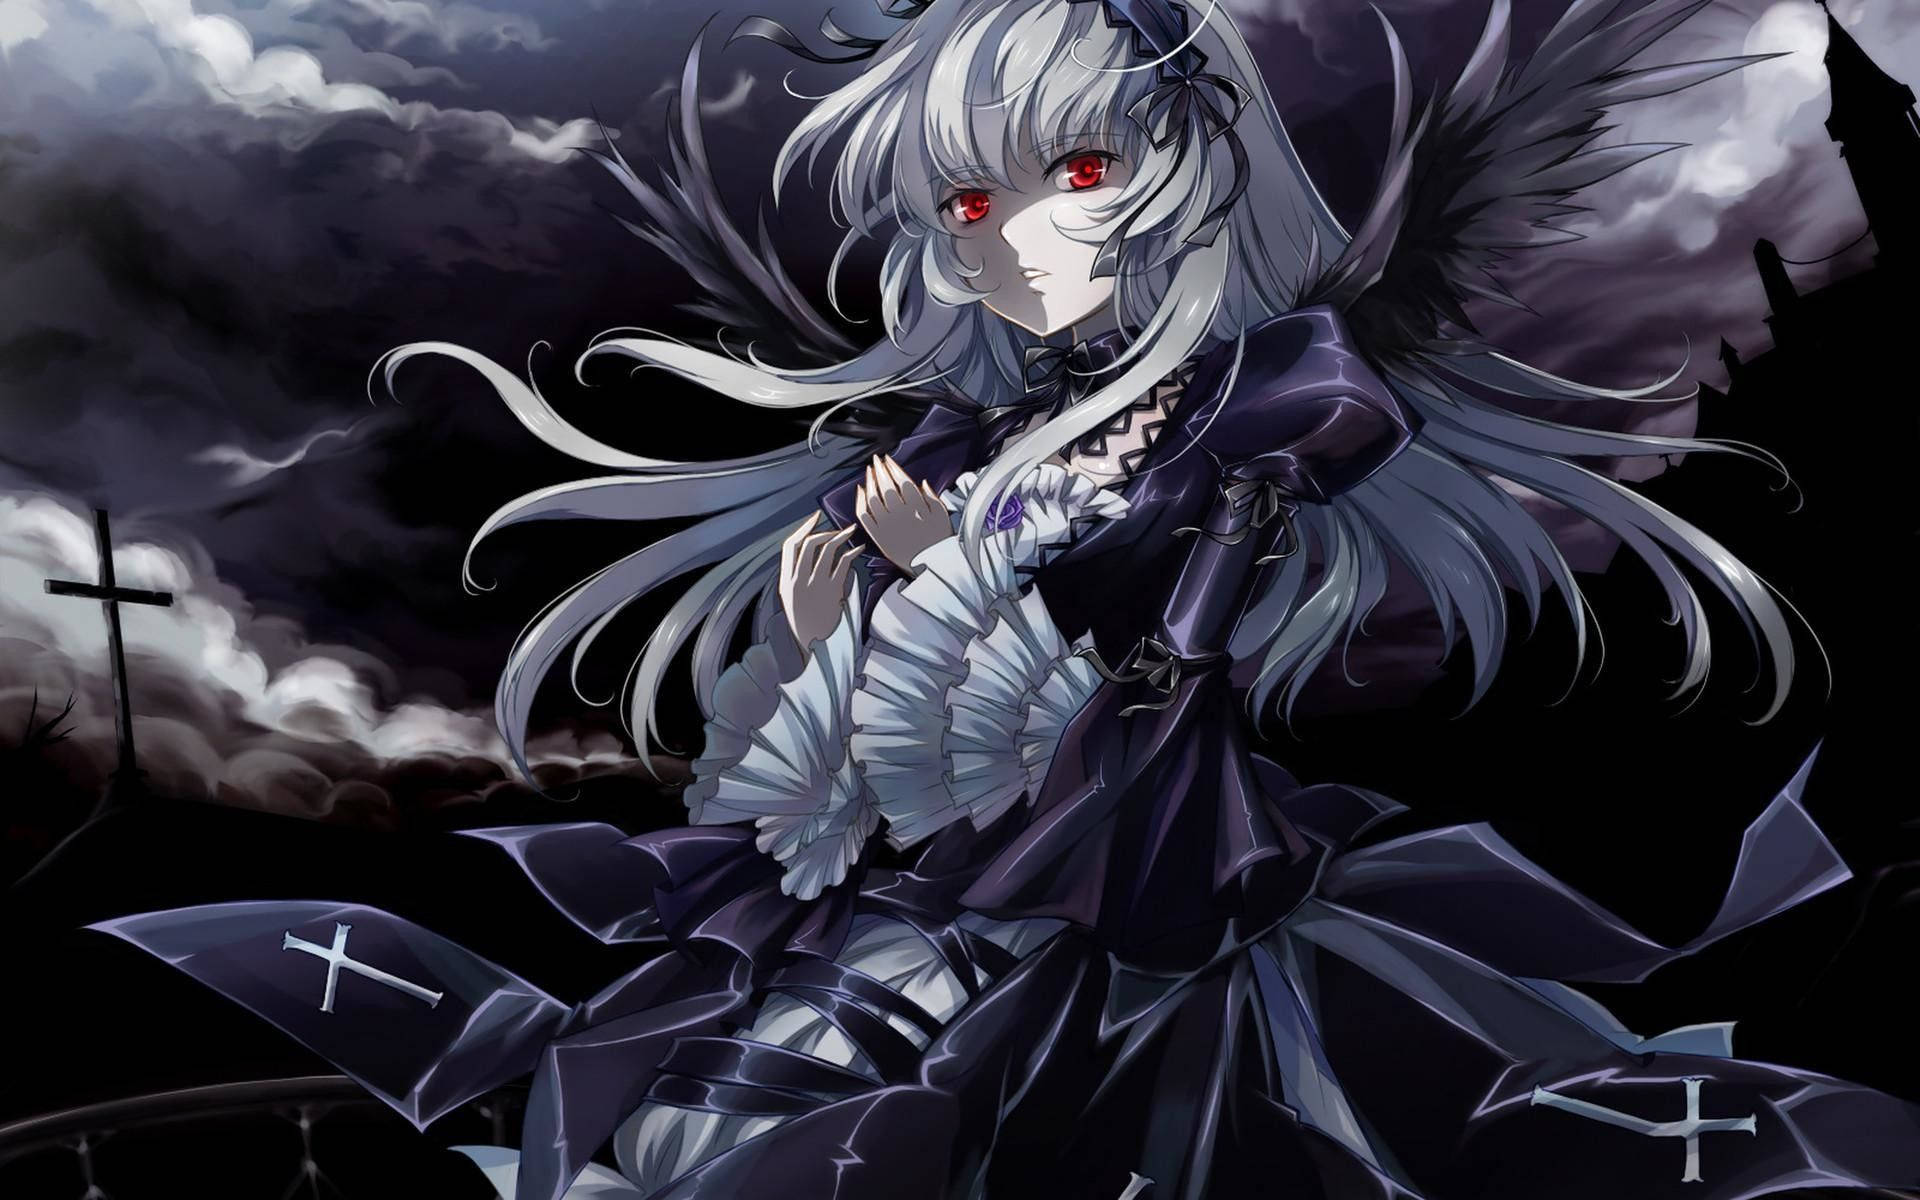 Dark Gothic Rozen Maiden Suigintou